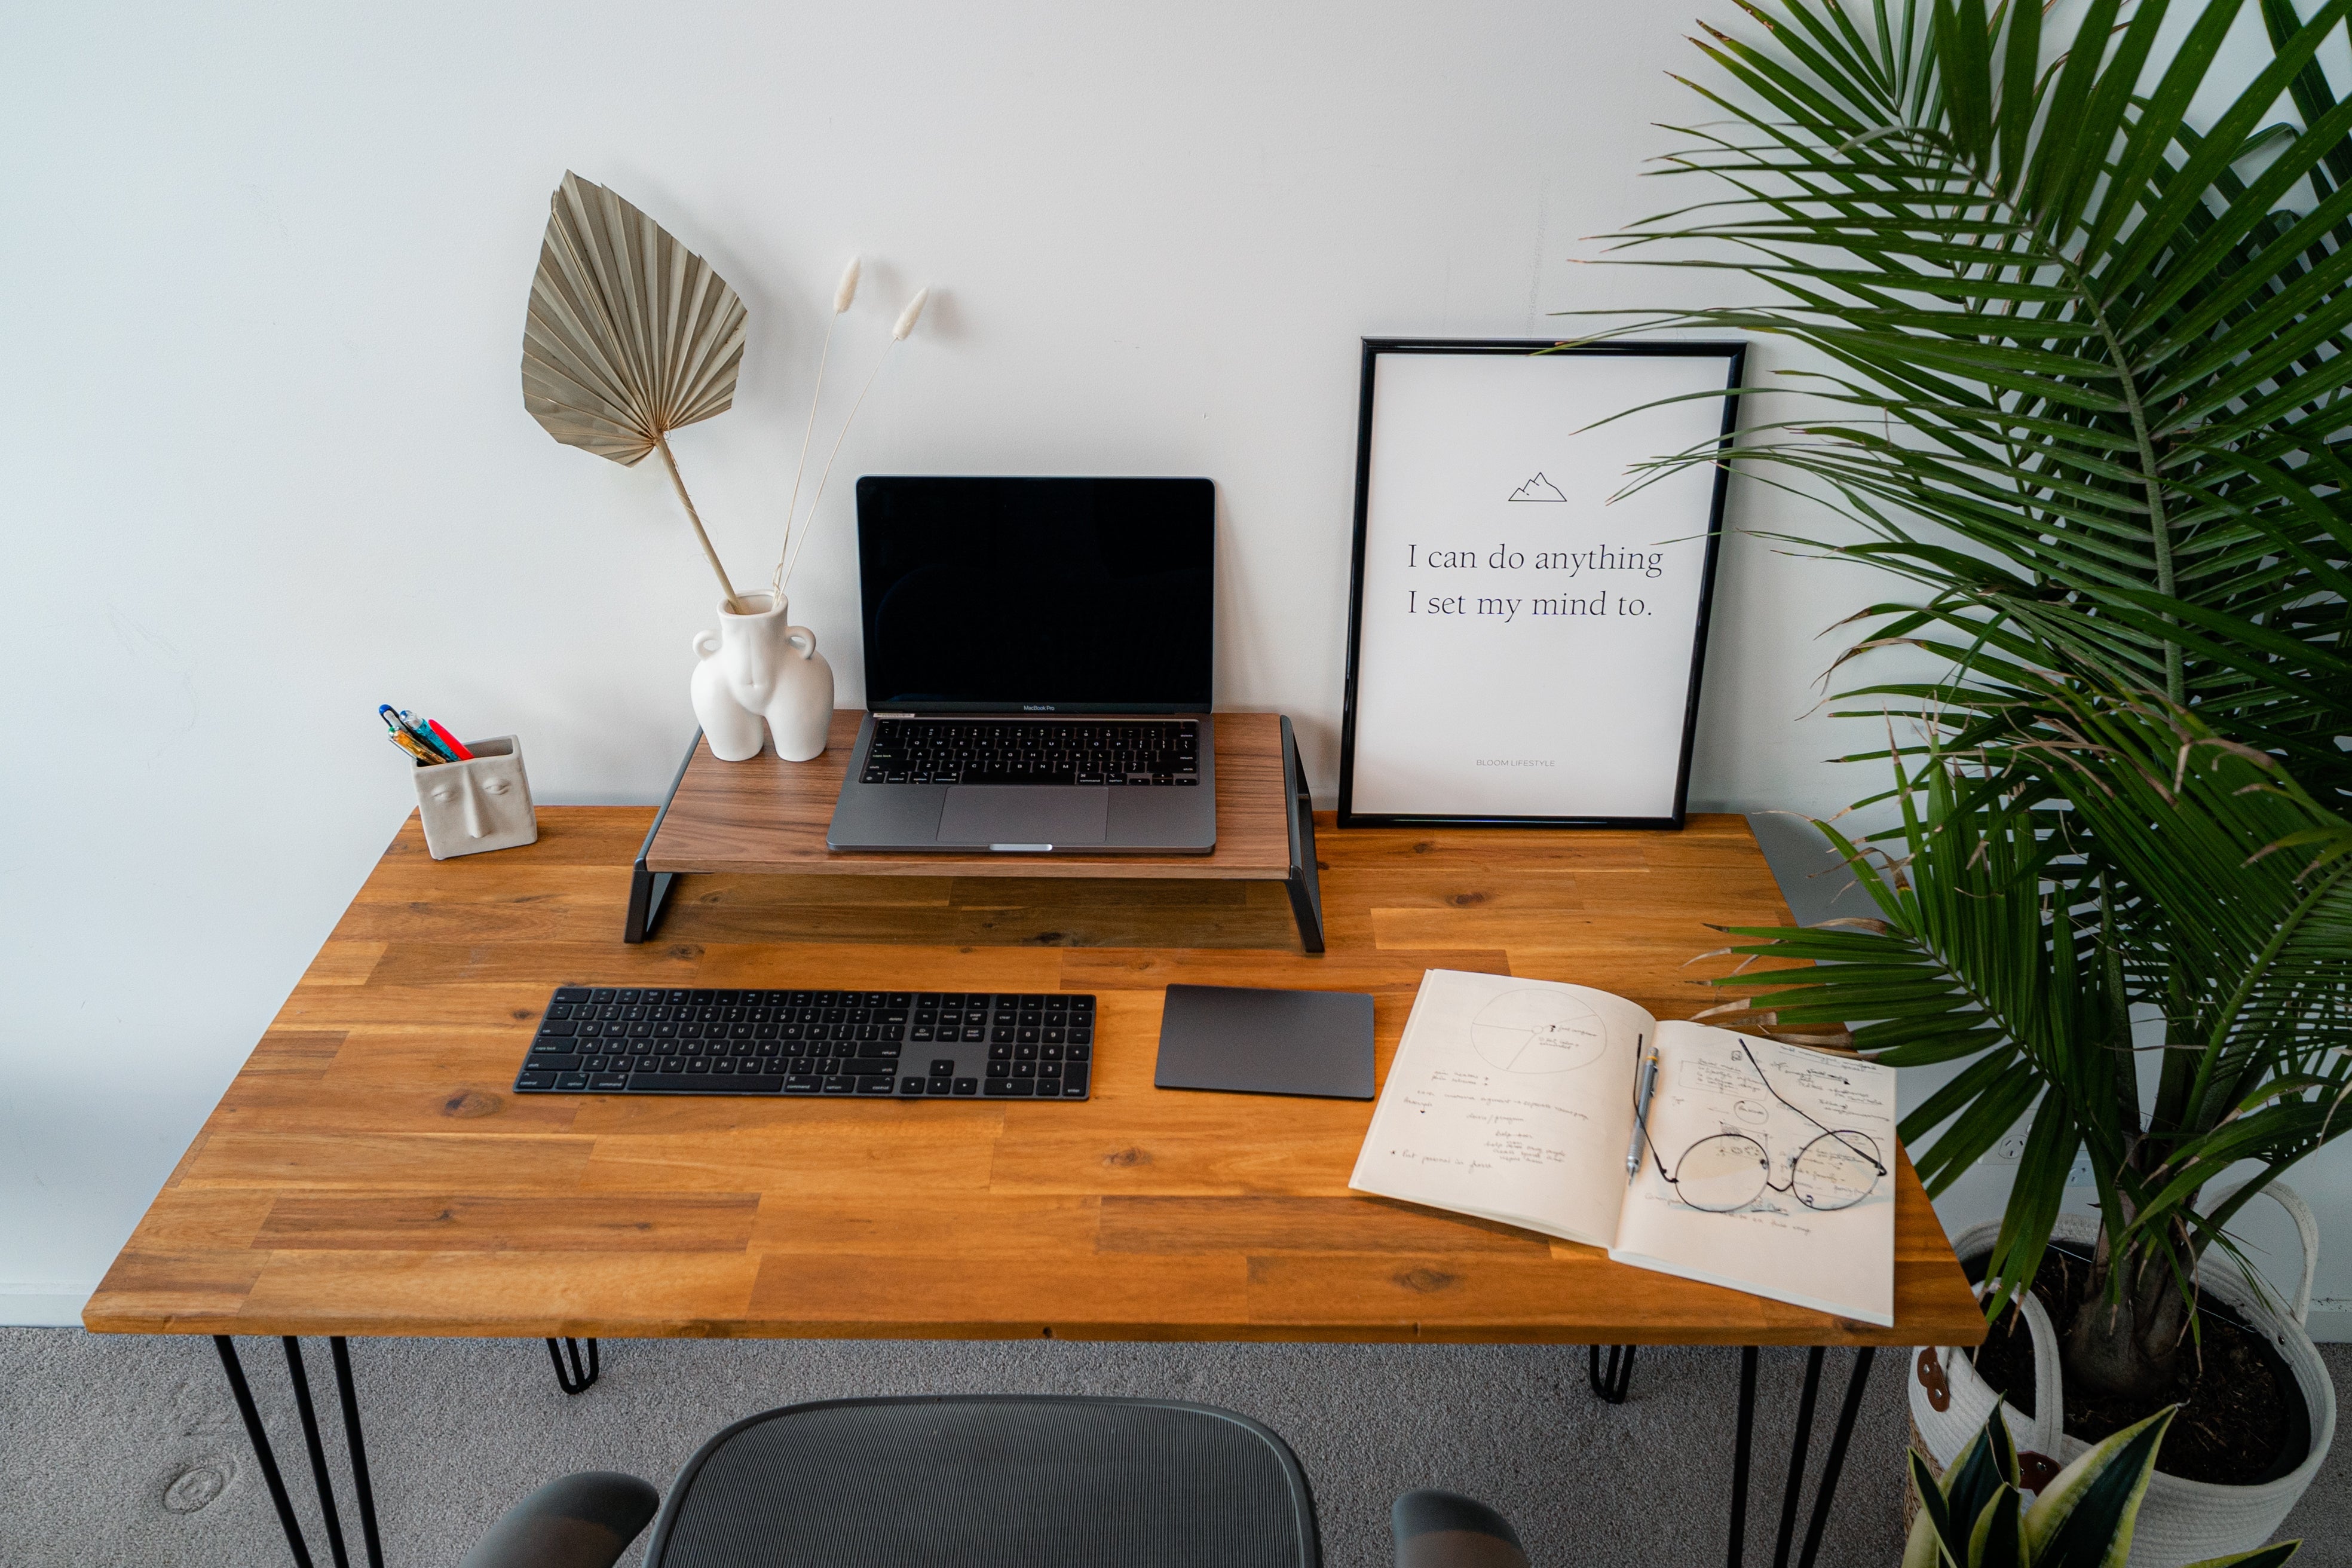 Wooden Desks - Timber Standing Desks - Home Office Desks